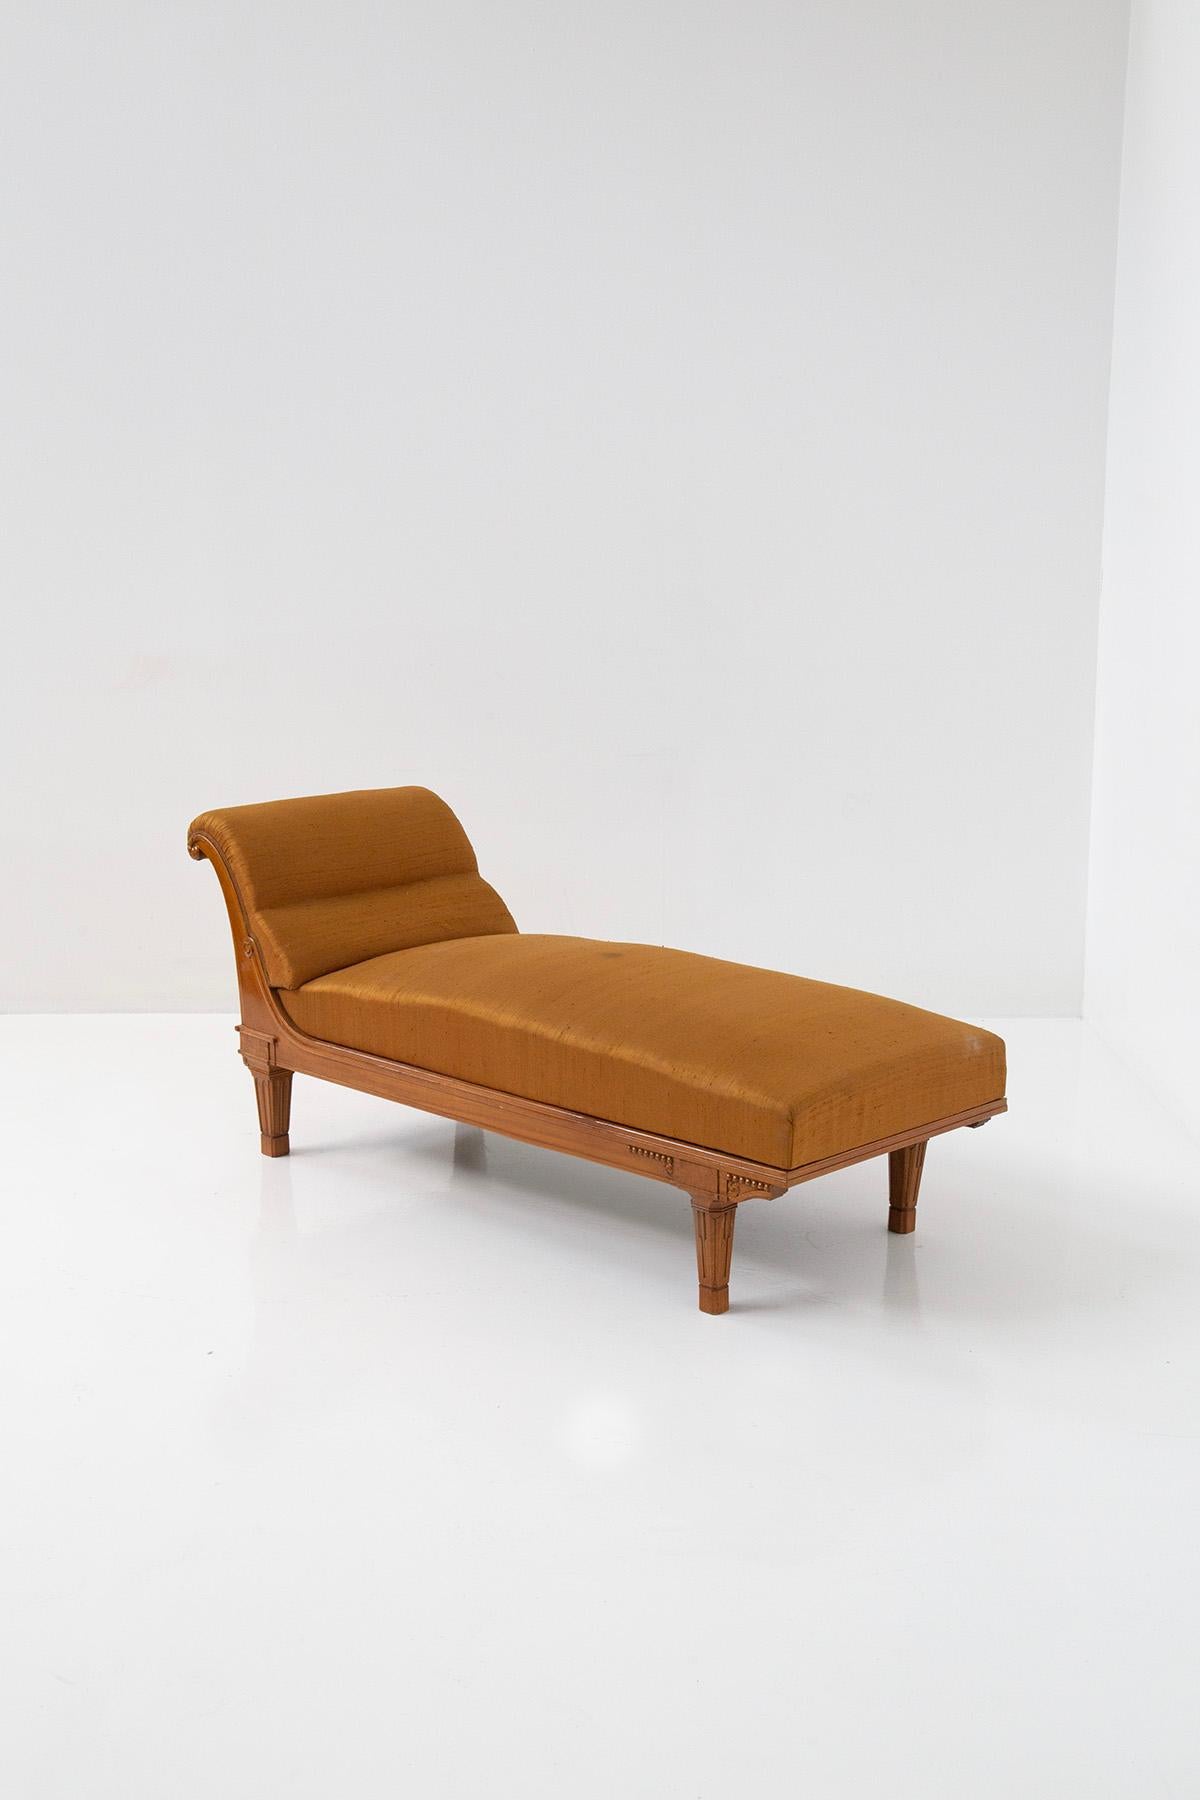 La chaise longue française raffinée, datant de la période entre l'Art nouveau et l'Art déco, est un meuble vraiment exquis. Tapissé d'un luxueux satin de soie orange, il respire l'élégance et la sophistication. L'utilisation d'un tissu aussi